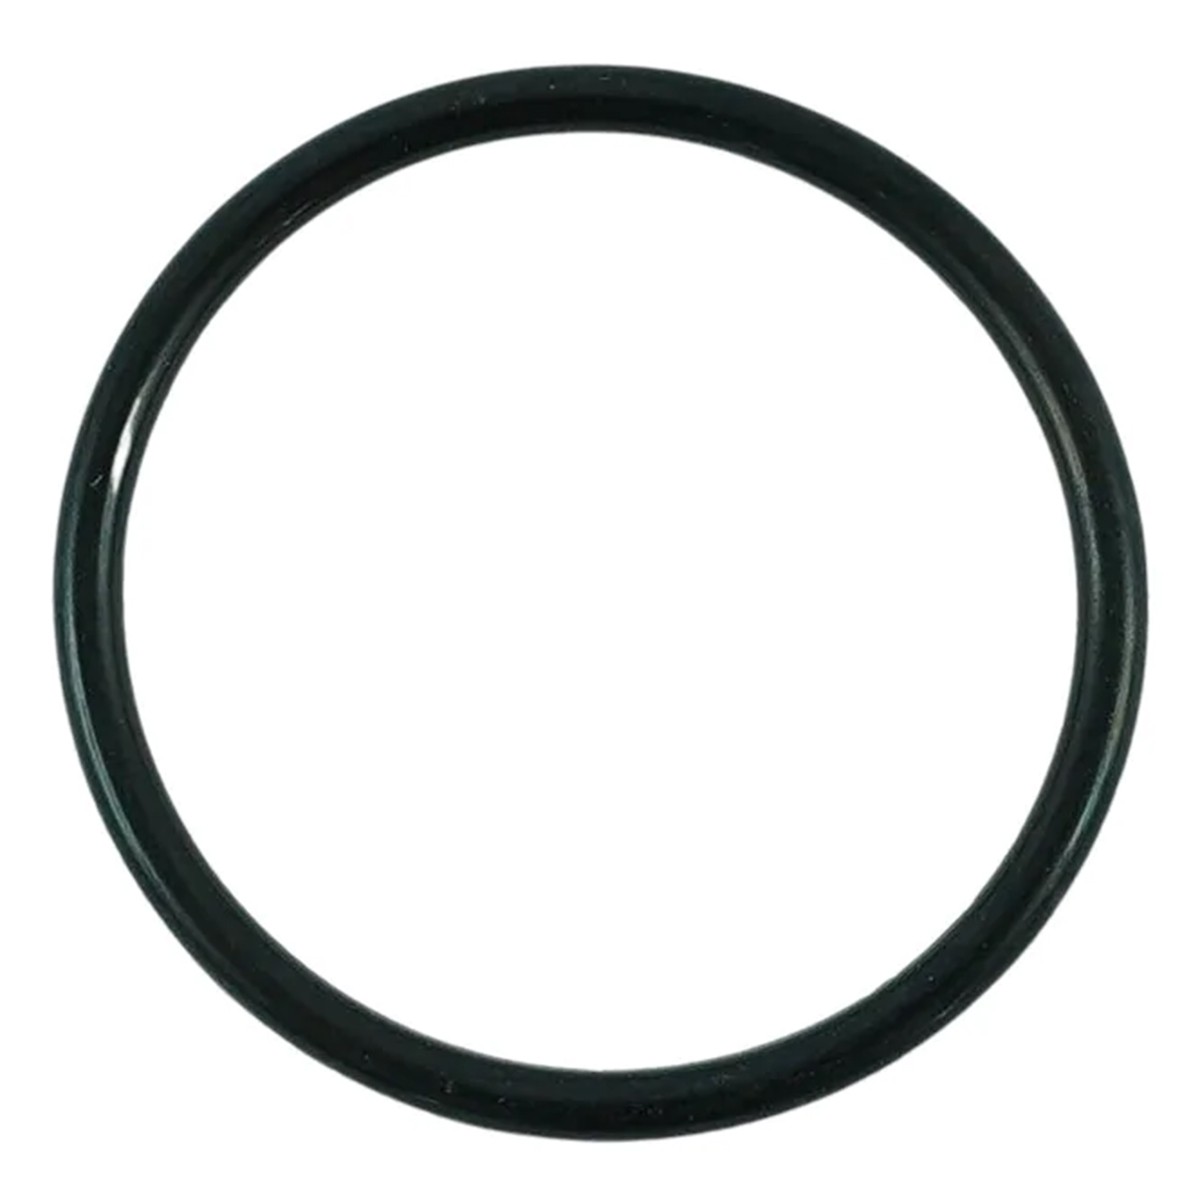 O-ring 45.70 x 3.50 mm / LS XJ25 / LS MT3.50 / LS MT3.60 / S801046010 / 40029217